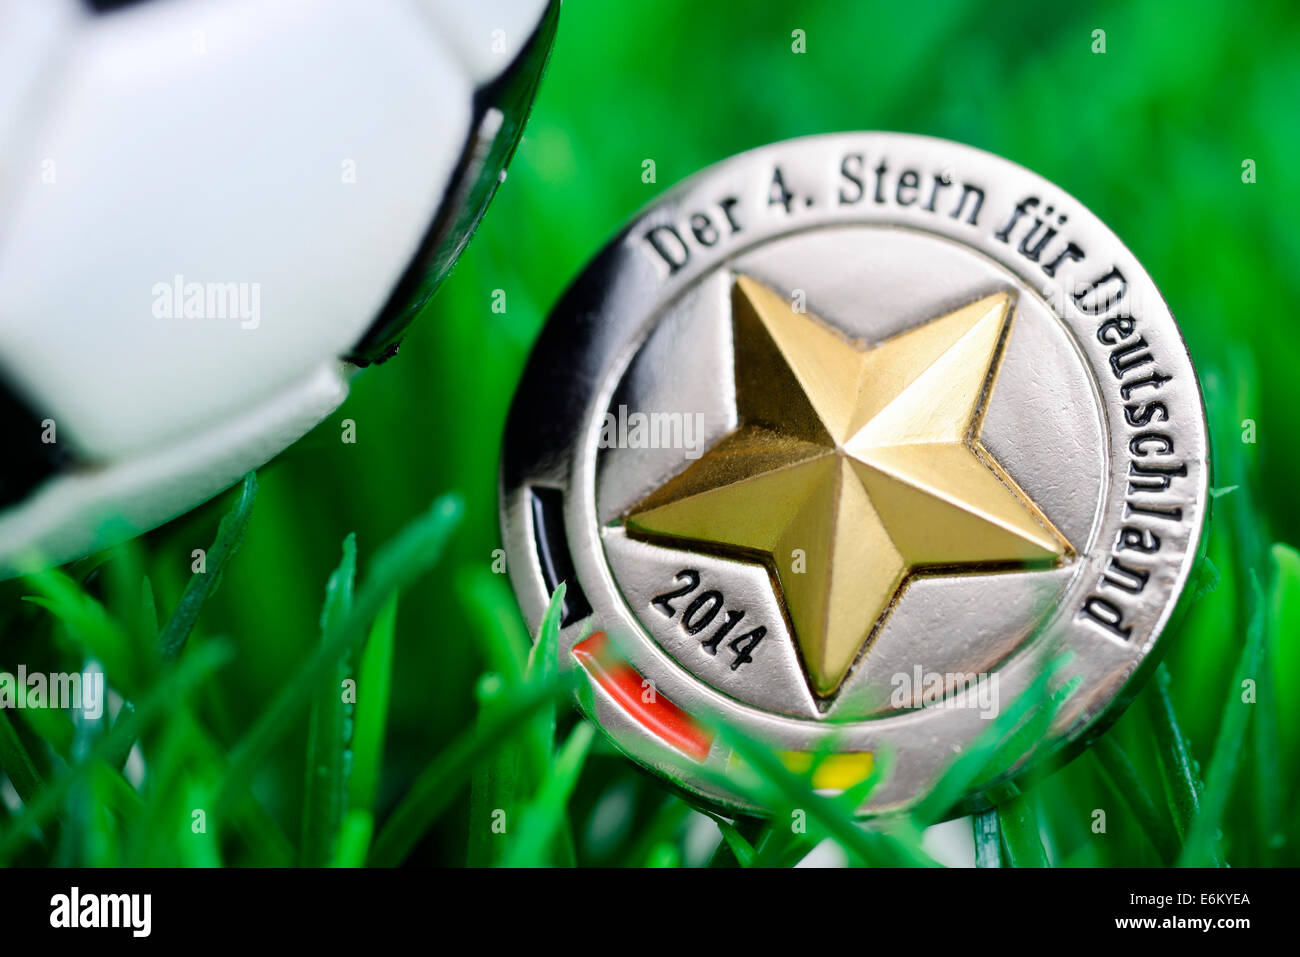 Fußball-Weltmeister 2014, der 4. Stern für Deutschland Stock Photo - Alamy